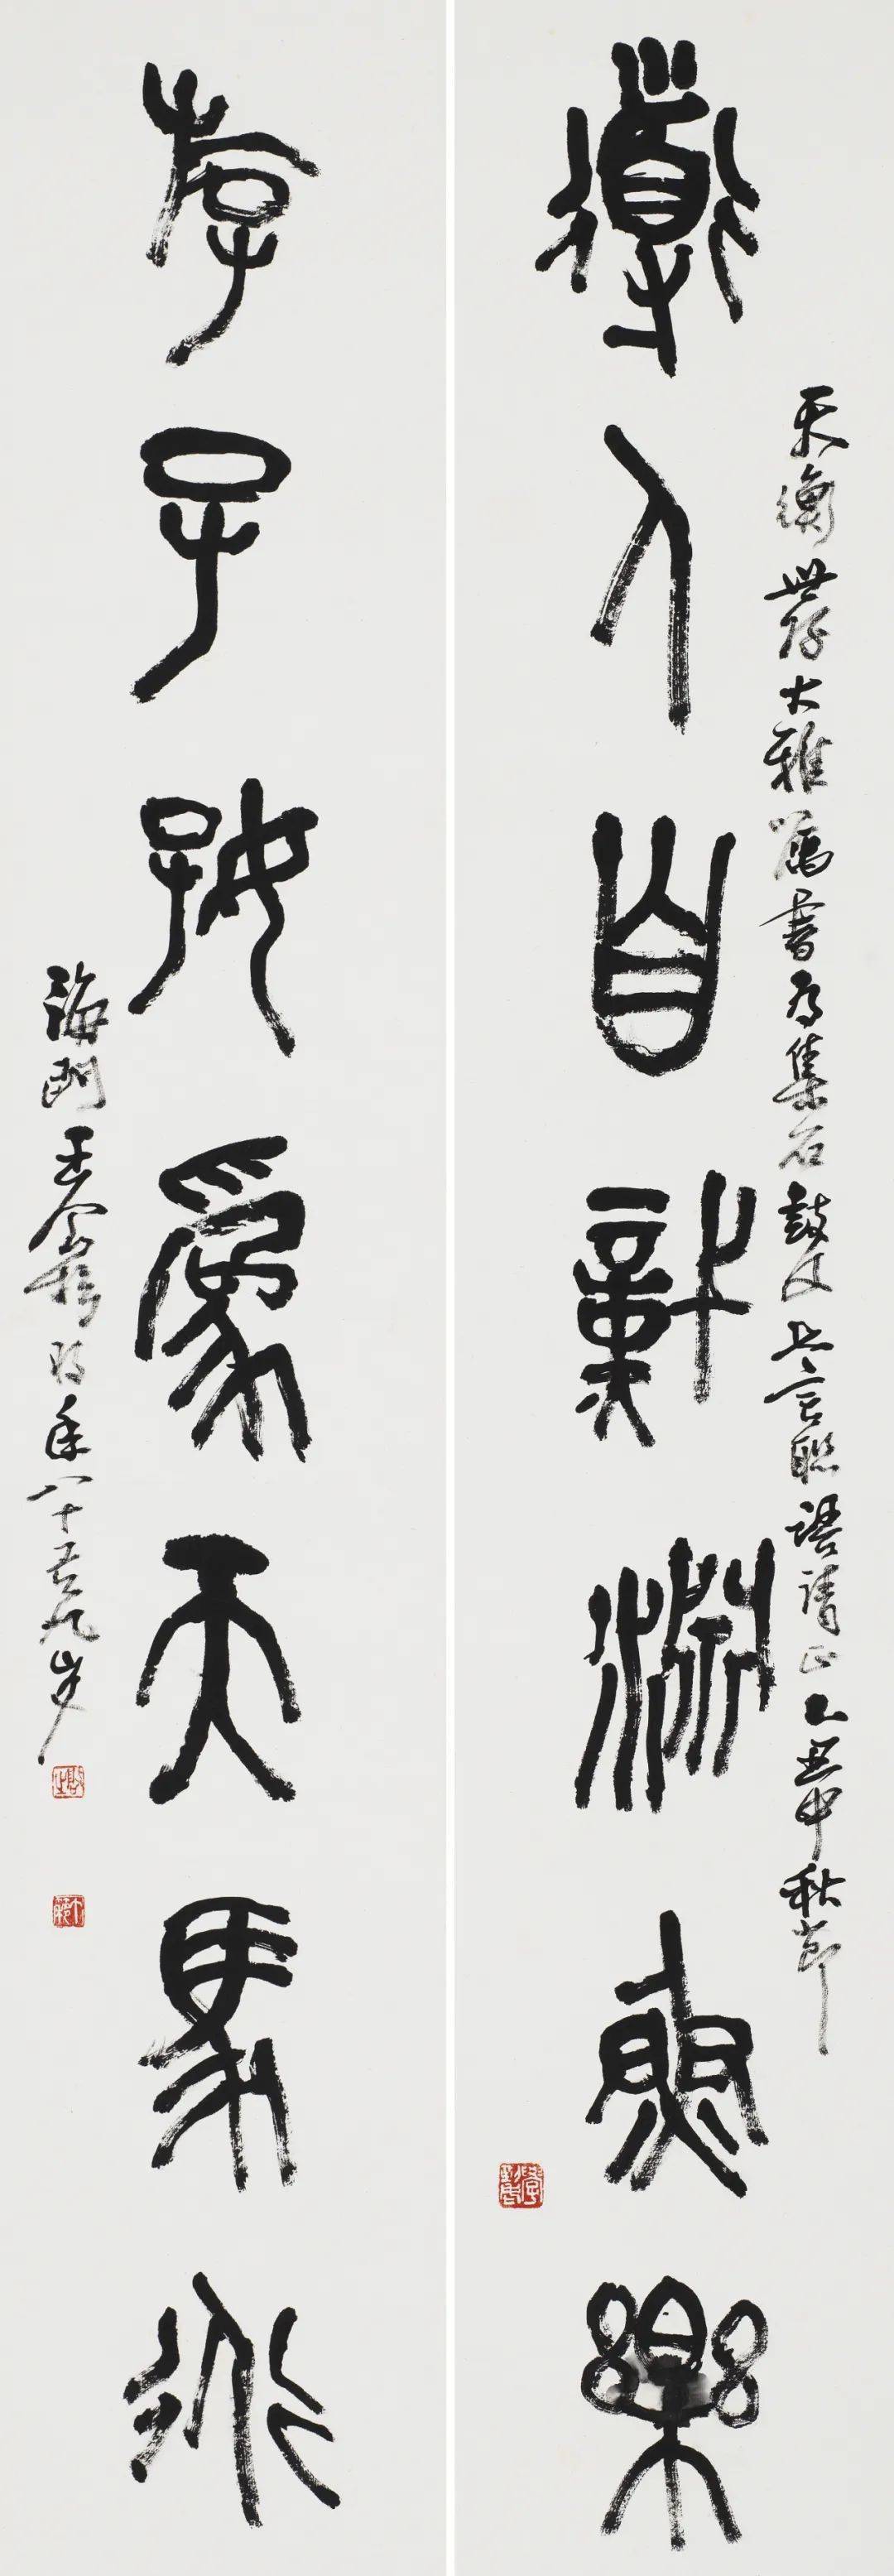 5×20cm×2上海韩天衡美术馆藏10邓散木(1898—1963)原名铁,字钝铁,号